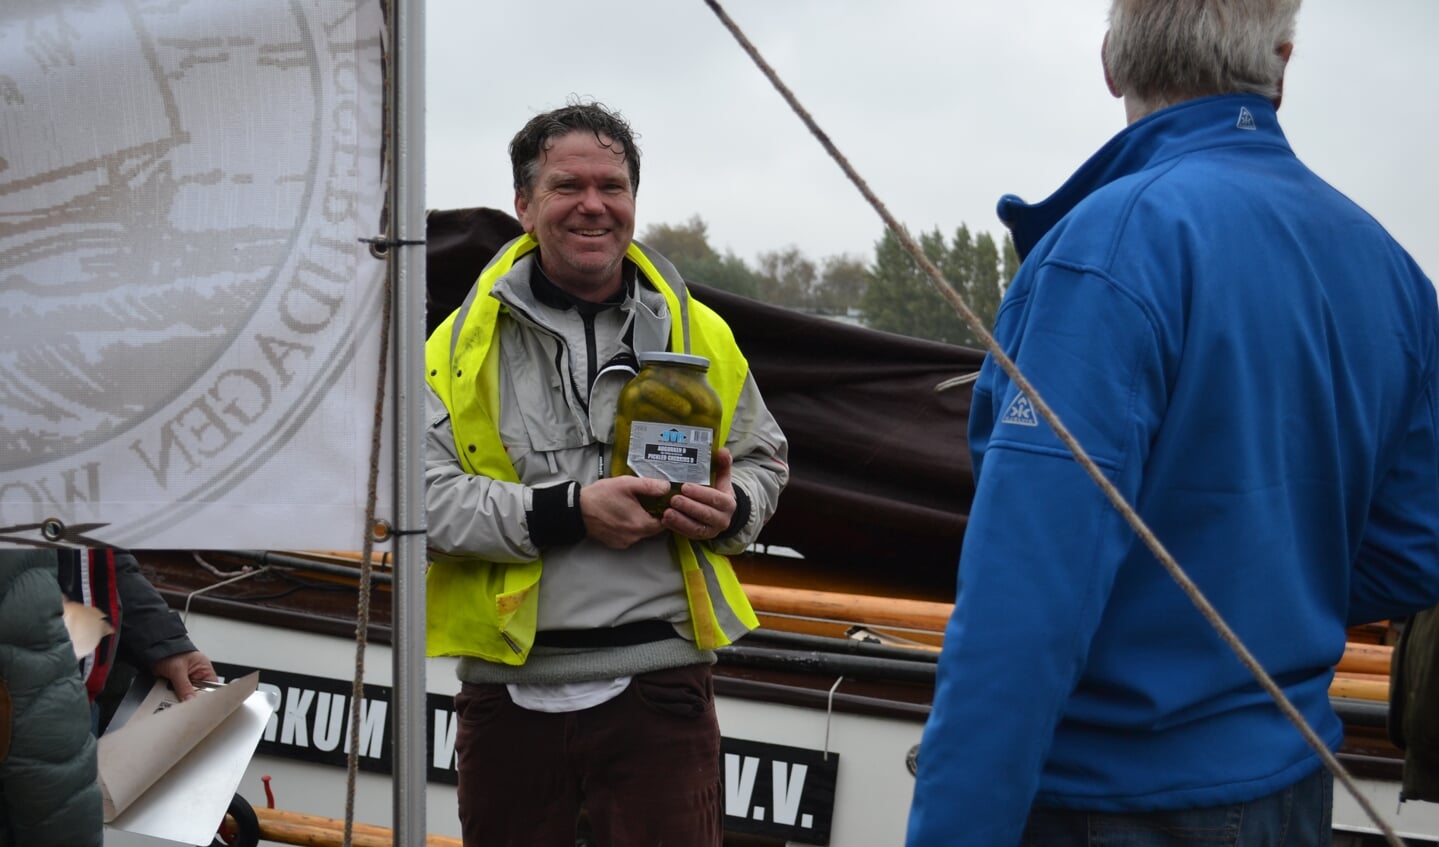 Leimuidense schipper Rob Ligtenberg van skûtsje De Nooit Volmaakt krijgt de Veense augurken overhandigd.